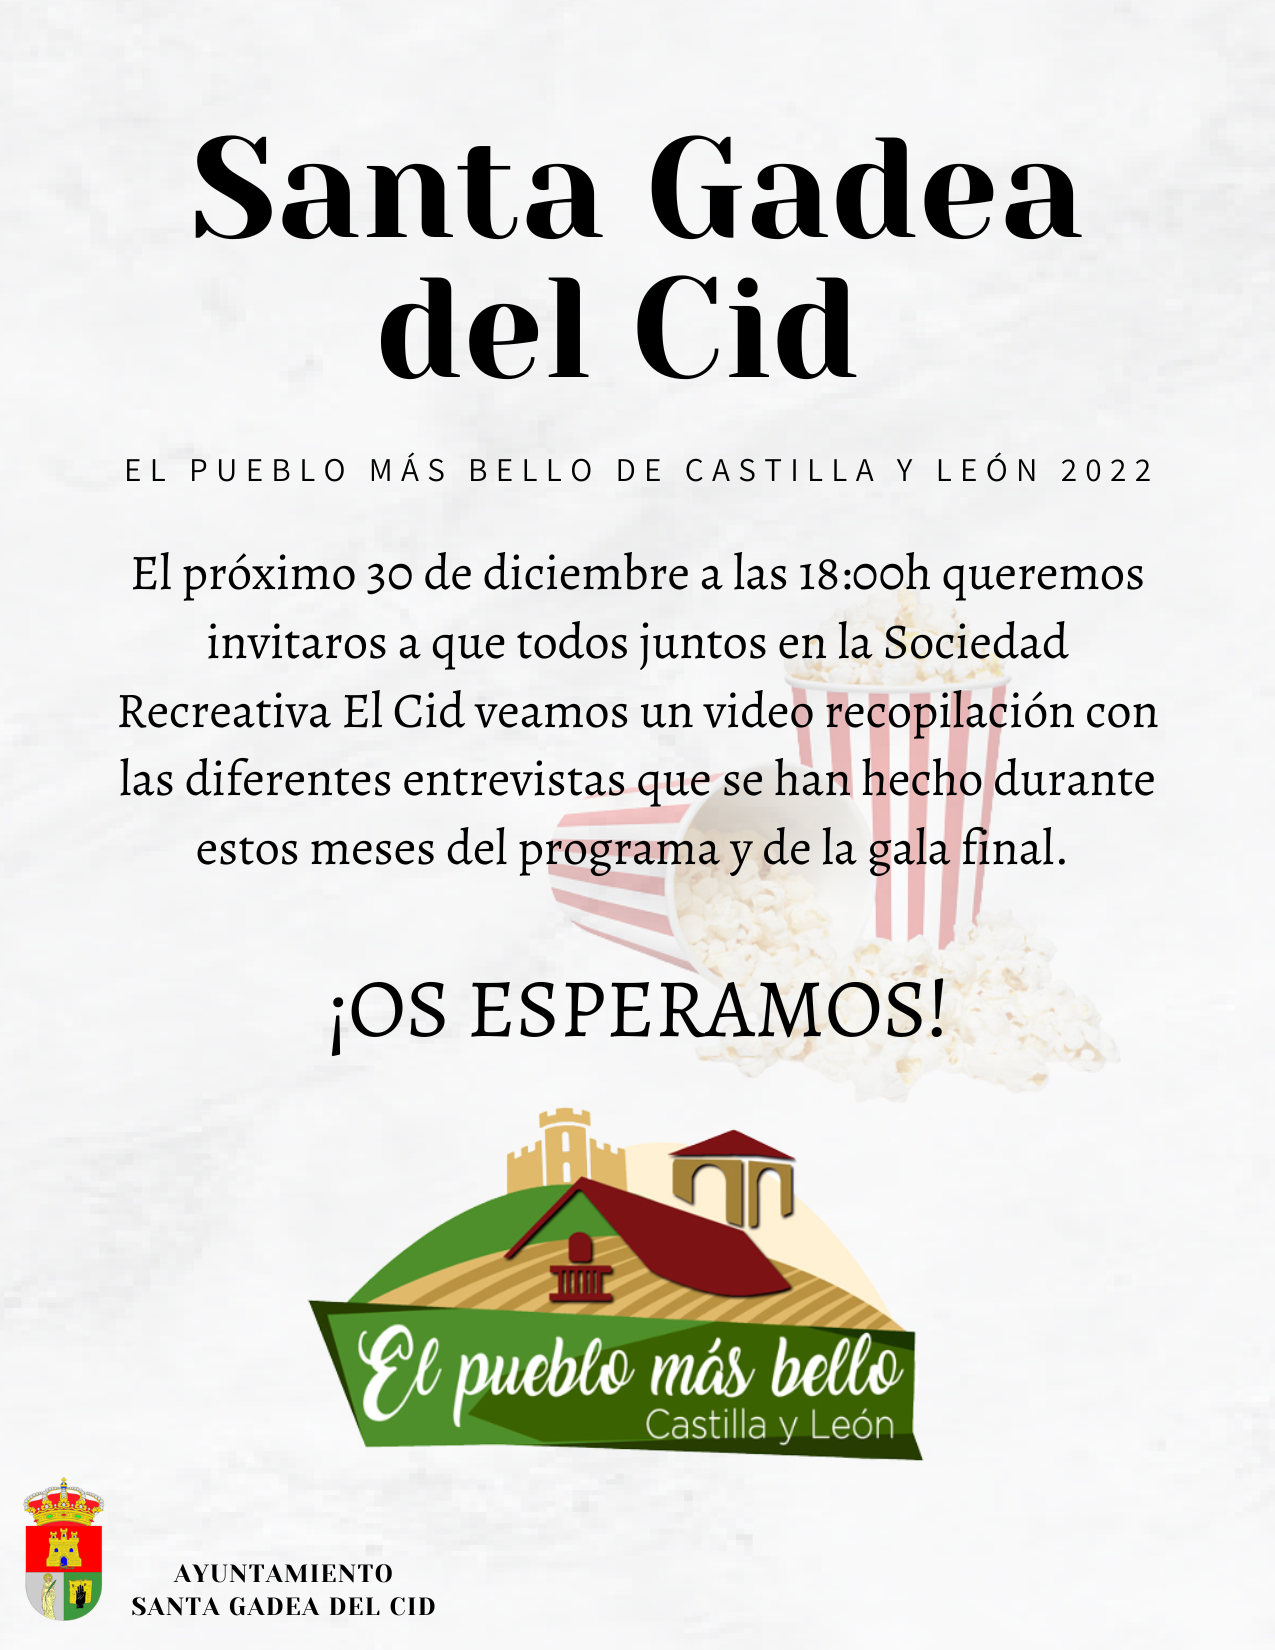 Santa Gadea del Cid El Pueblo Más Bello de Castilla y León 2022